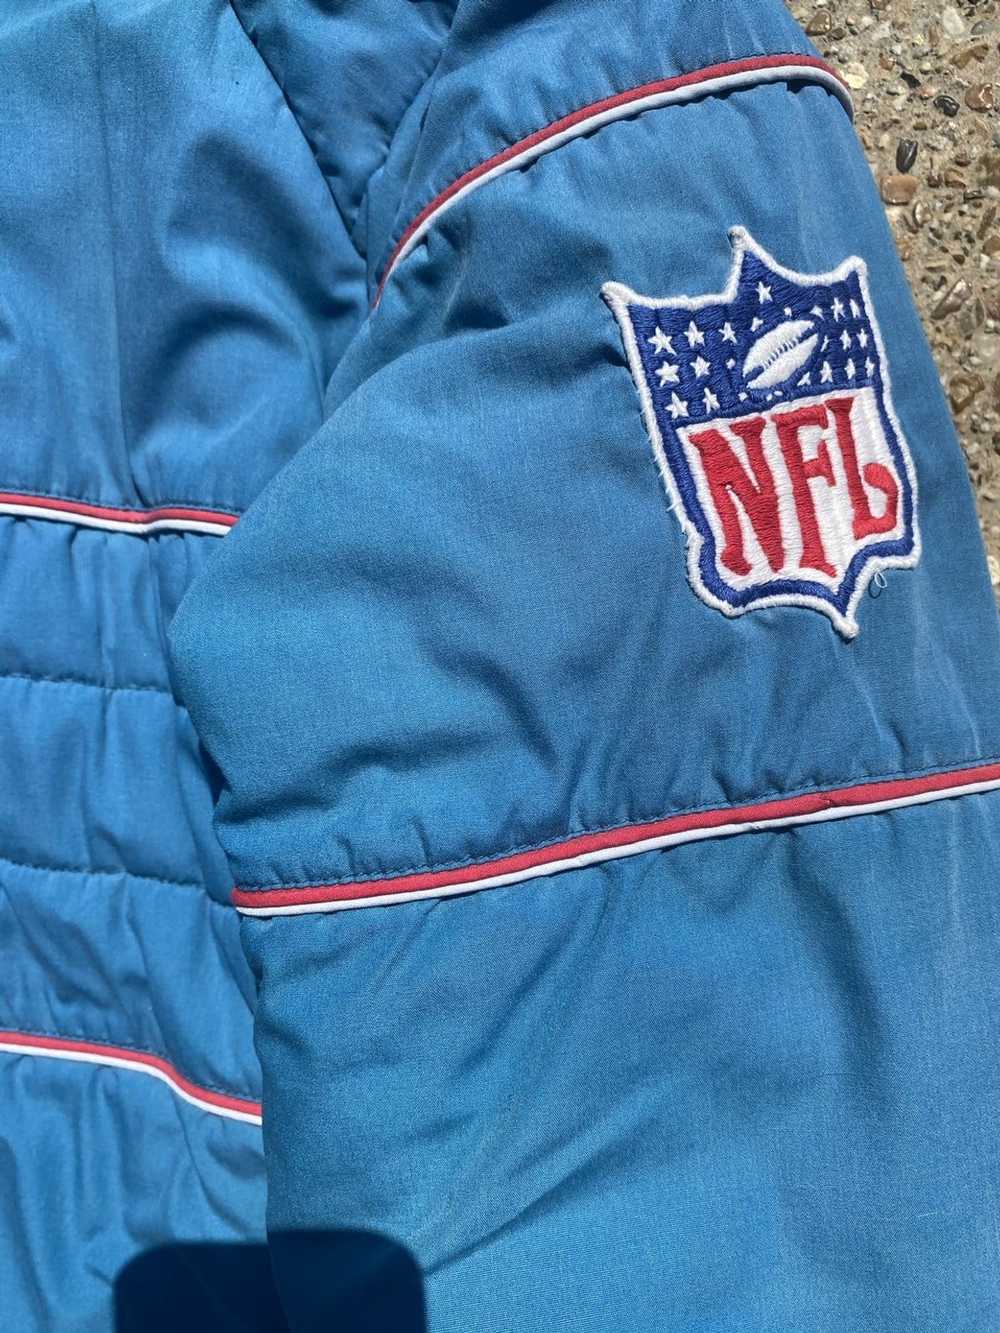 NFL × Vintage 90’s NFL jacket - image 3